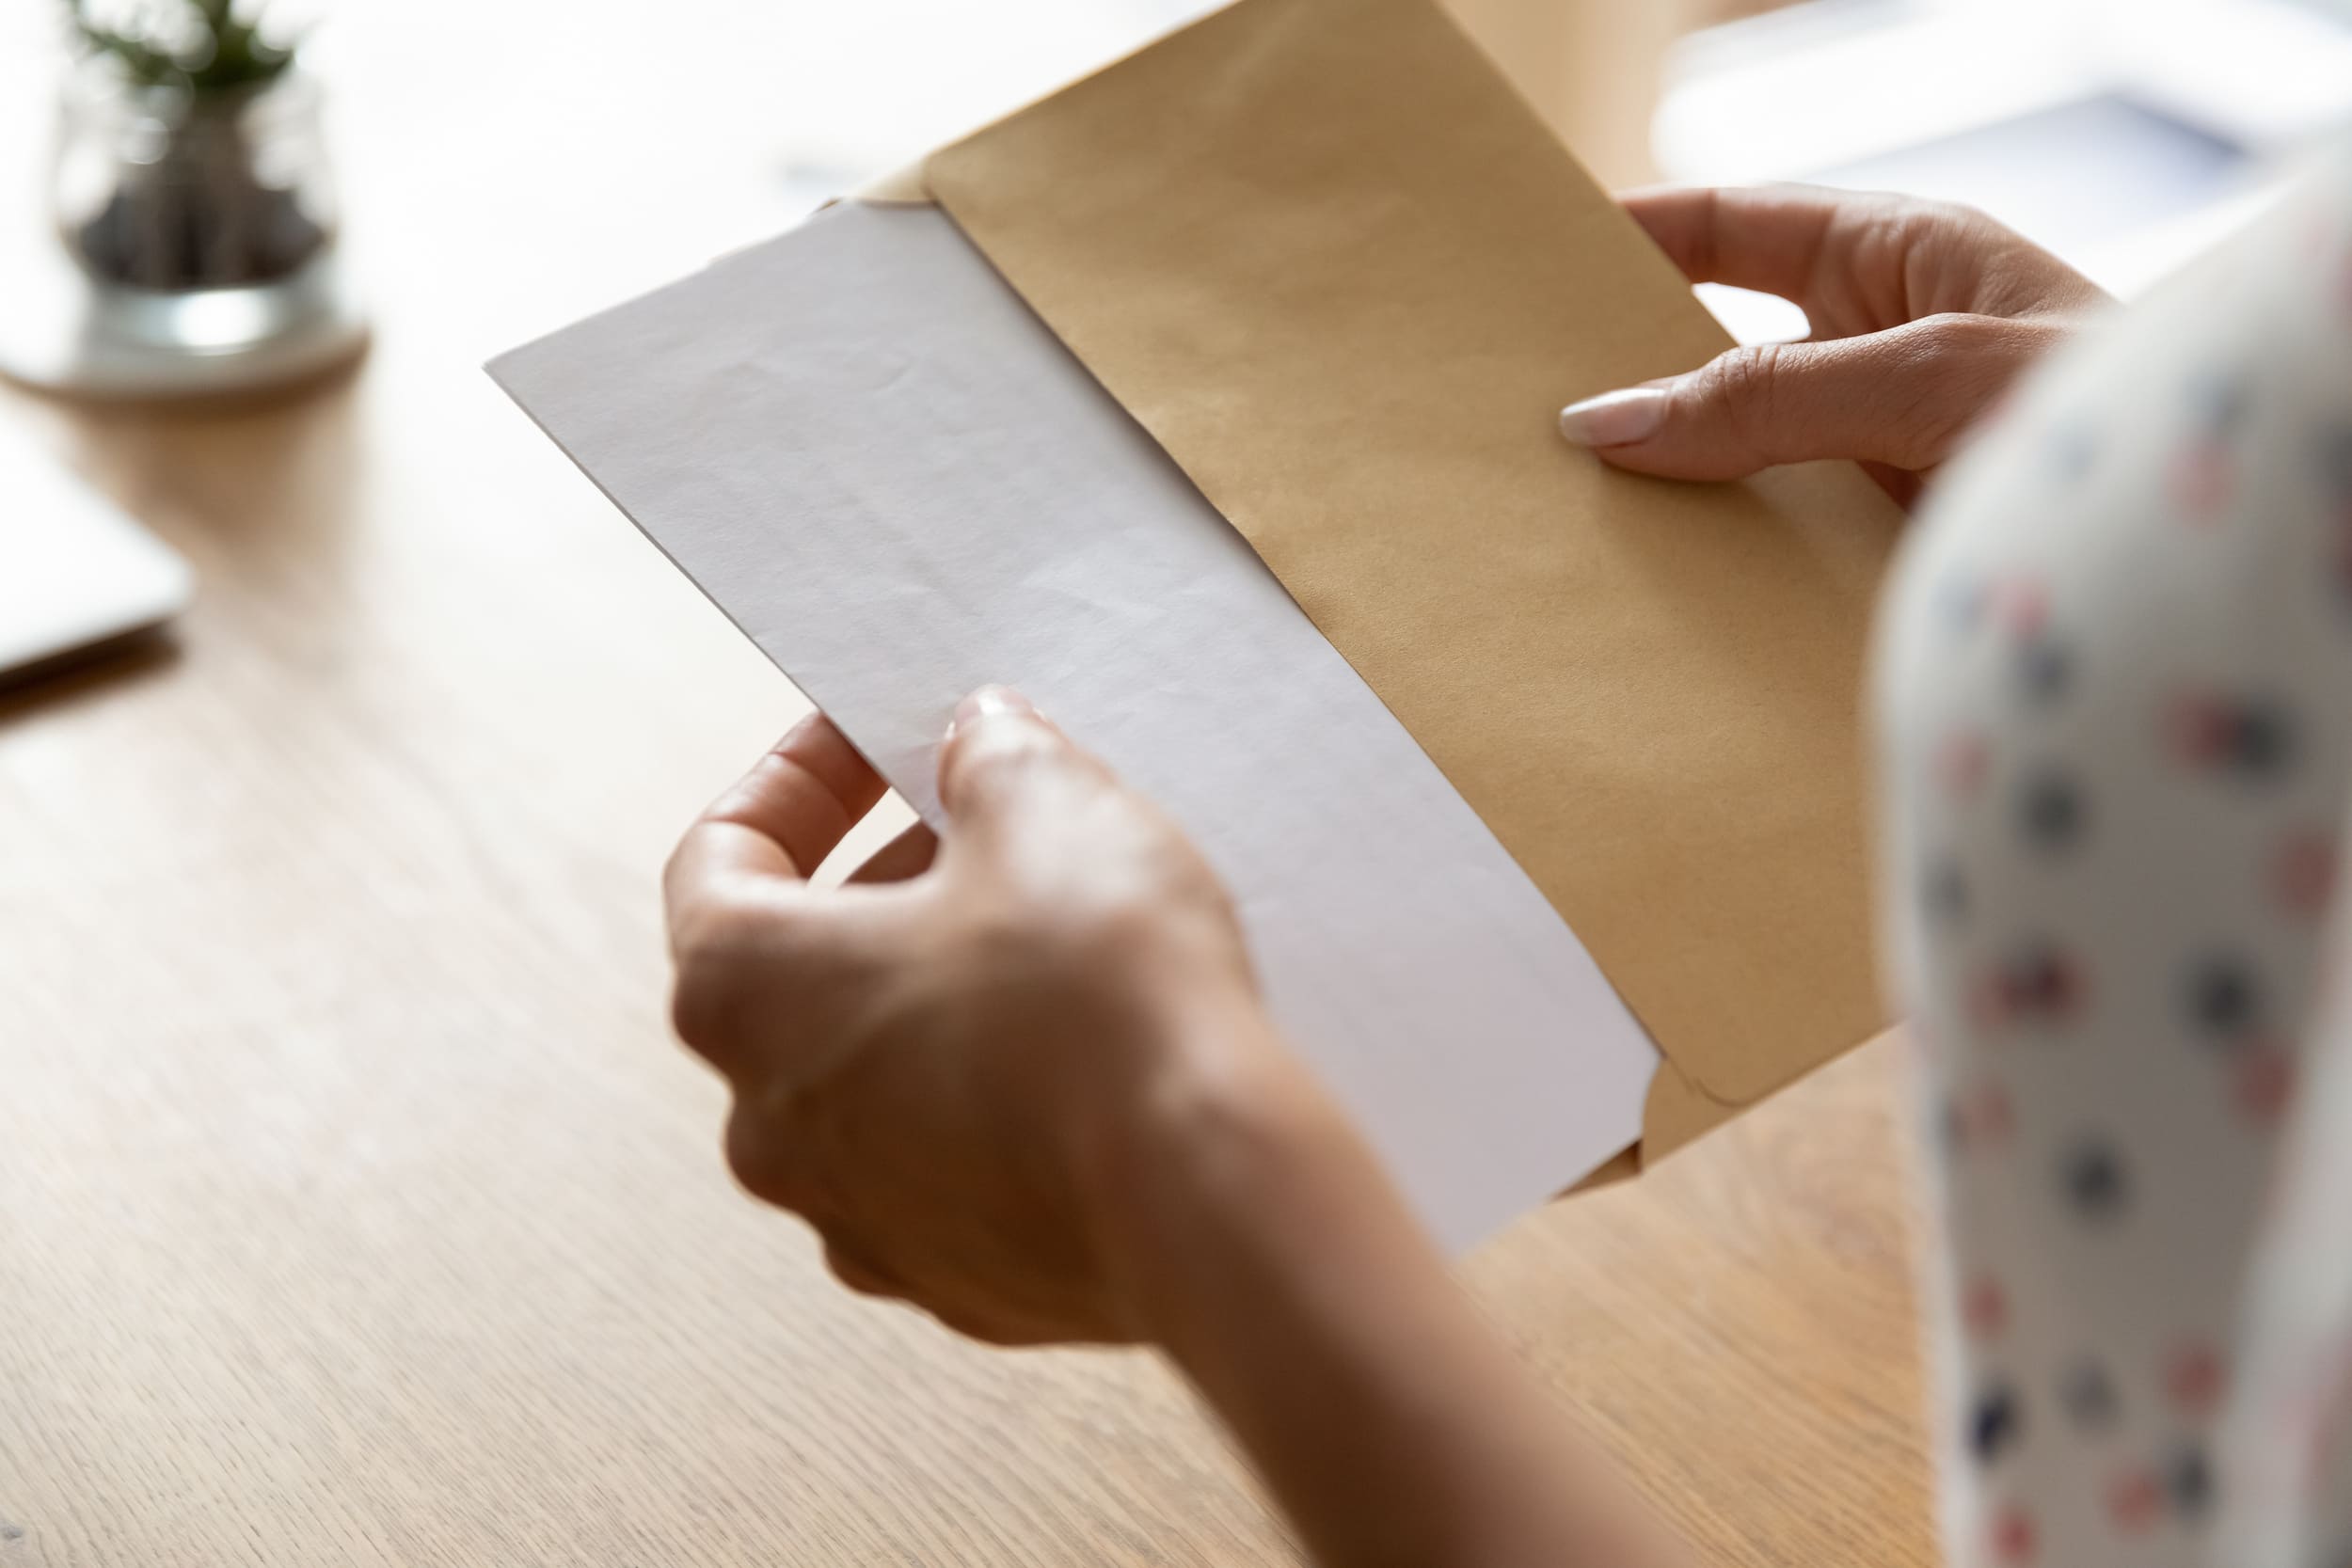 Plieuse automatique de documents , pliez votre courrier plus vite